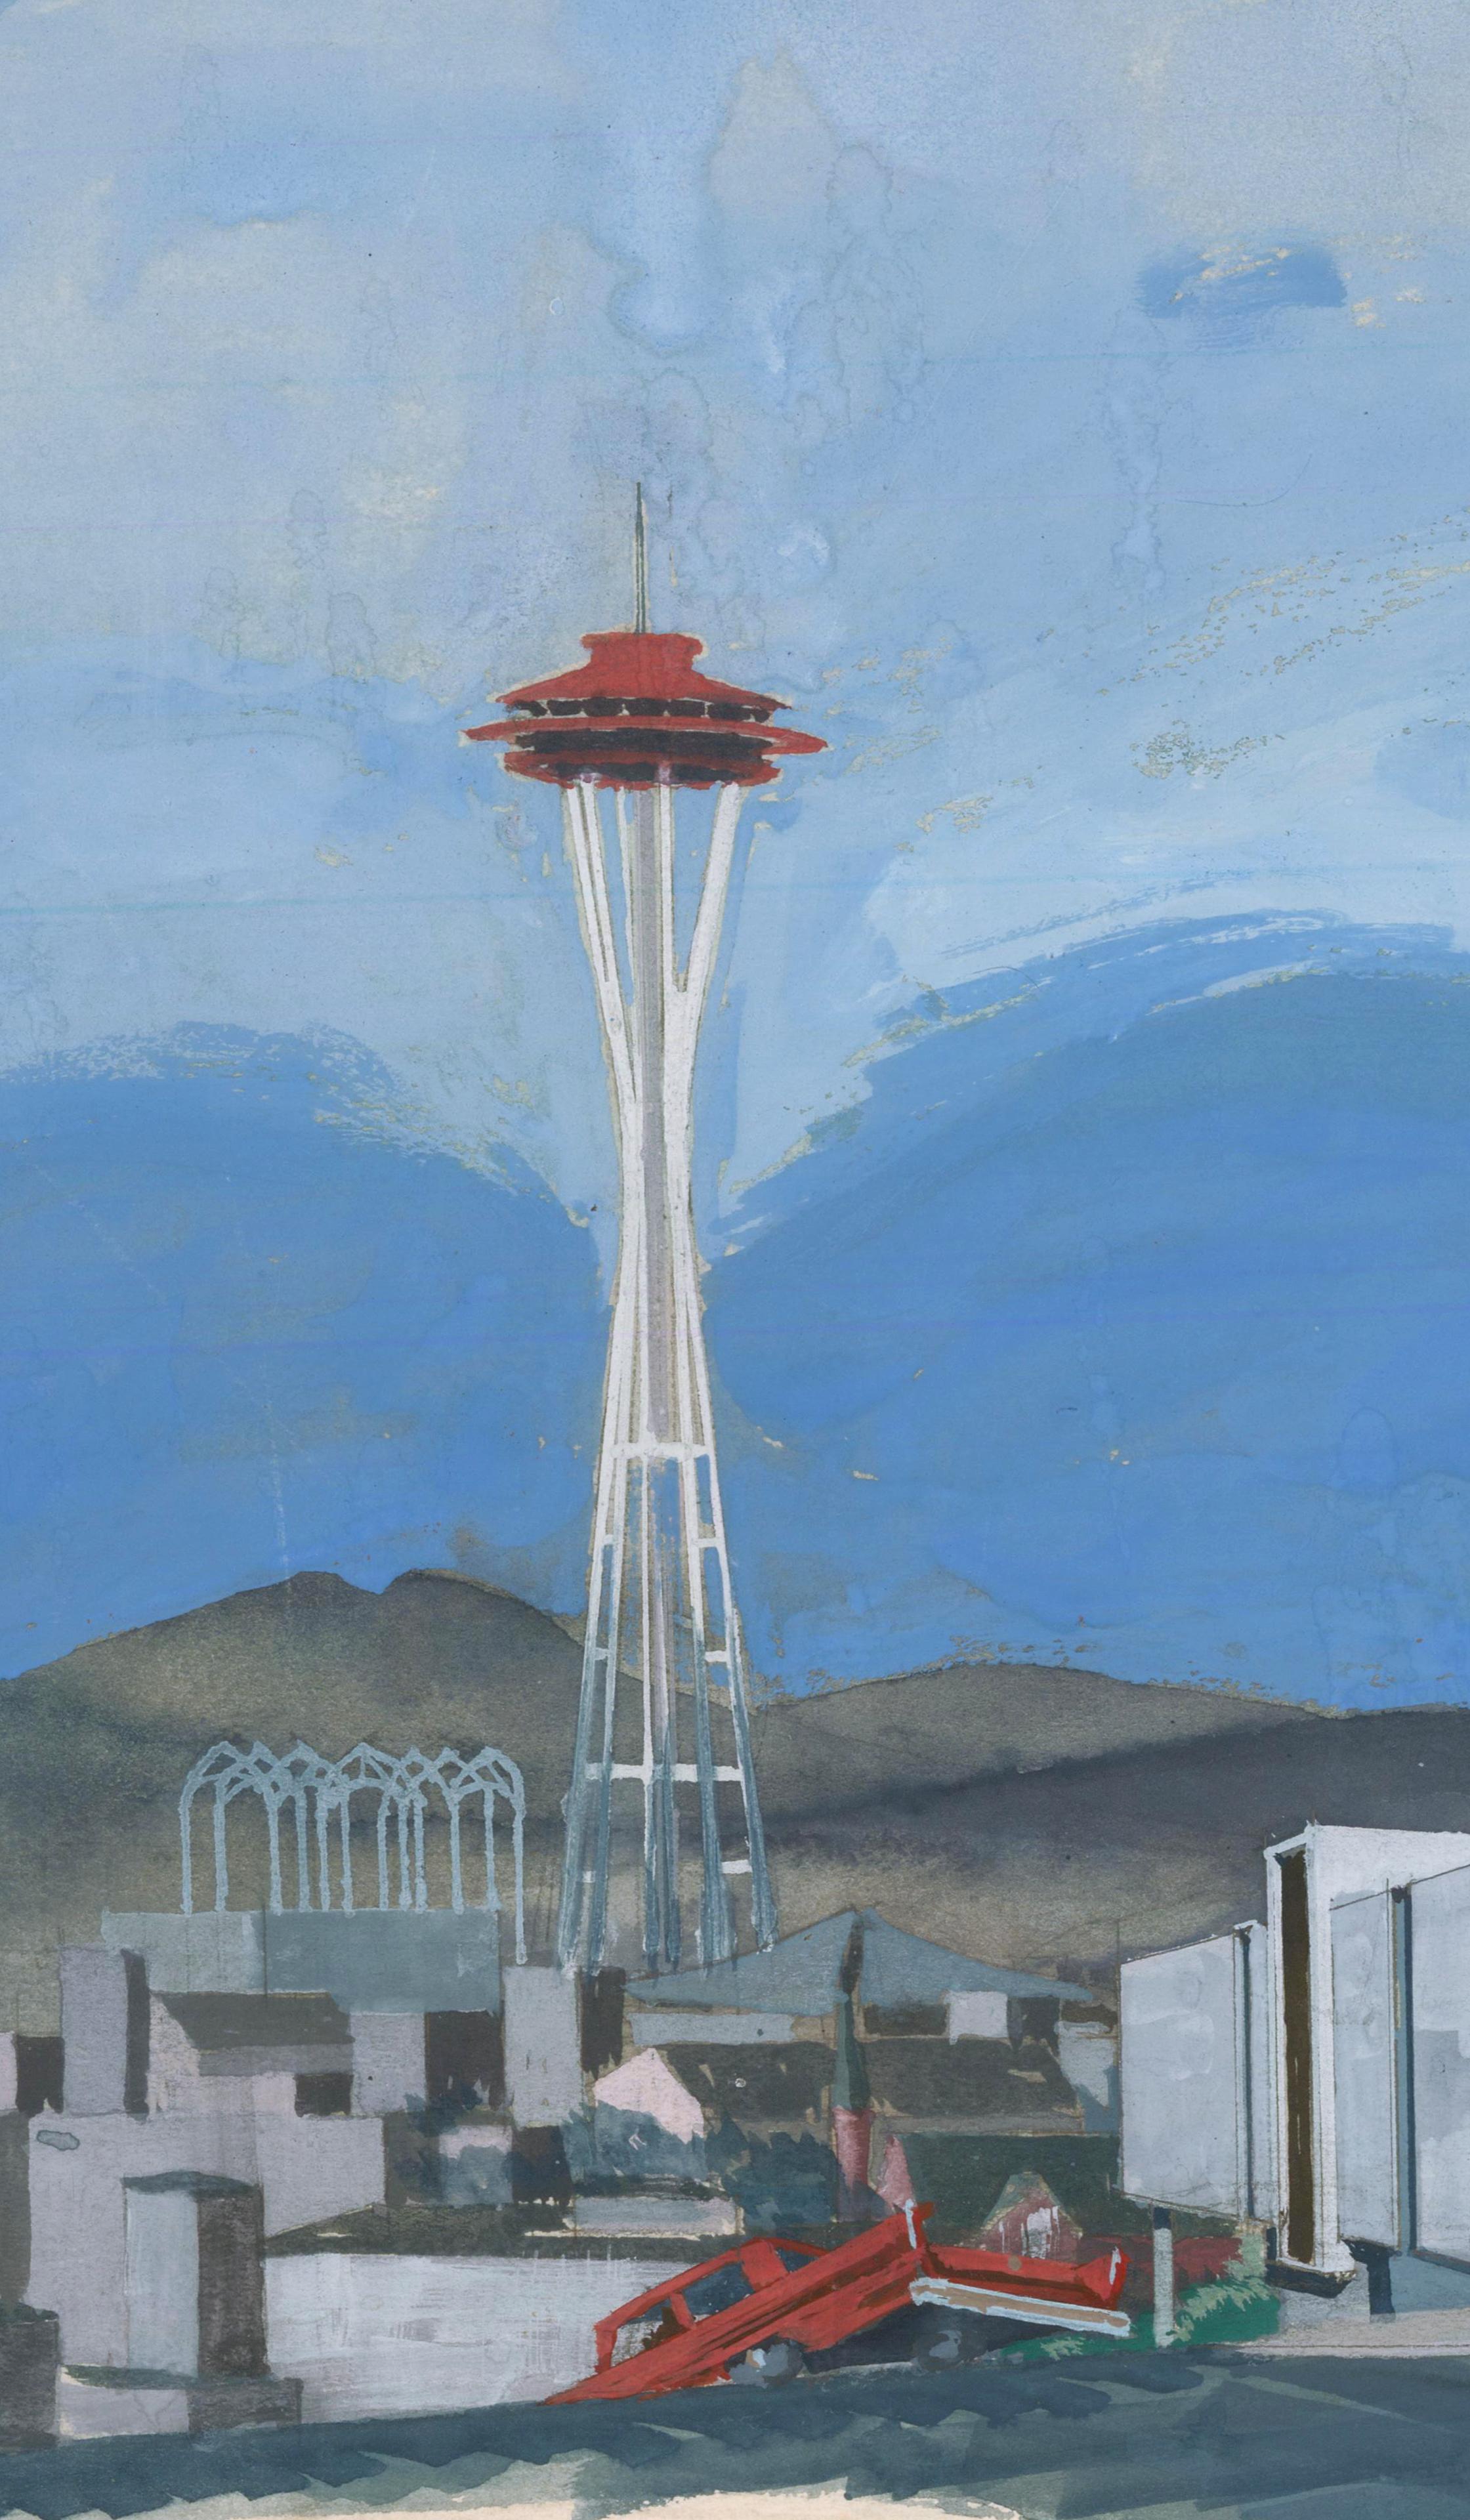 Seattle Gebäudedesign mit Raumteiler und Space Needle &Pacific Science Center im Hintergrund (Blau), Landscape Painting, von Unknown